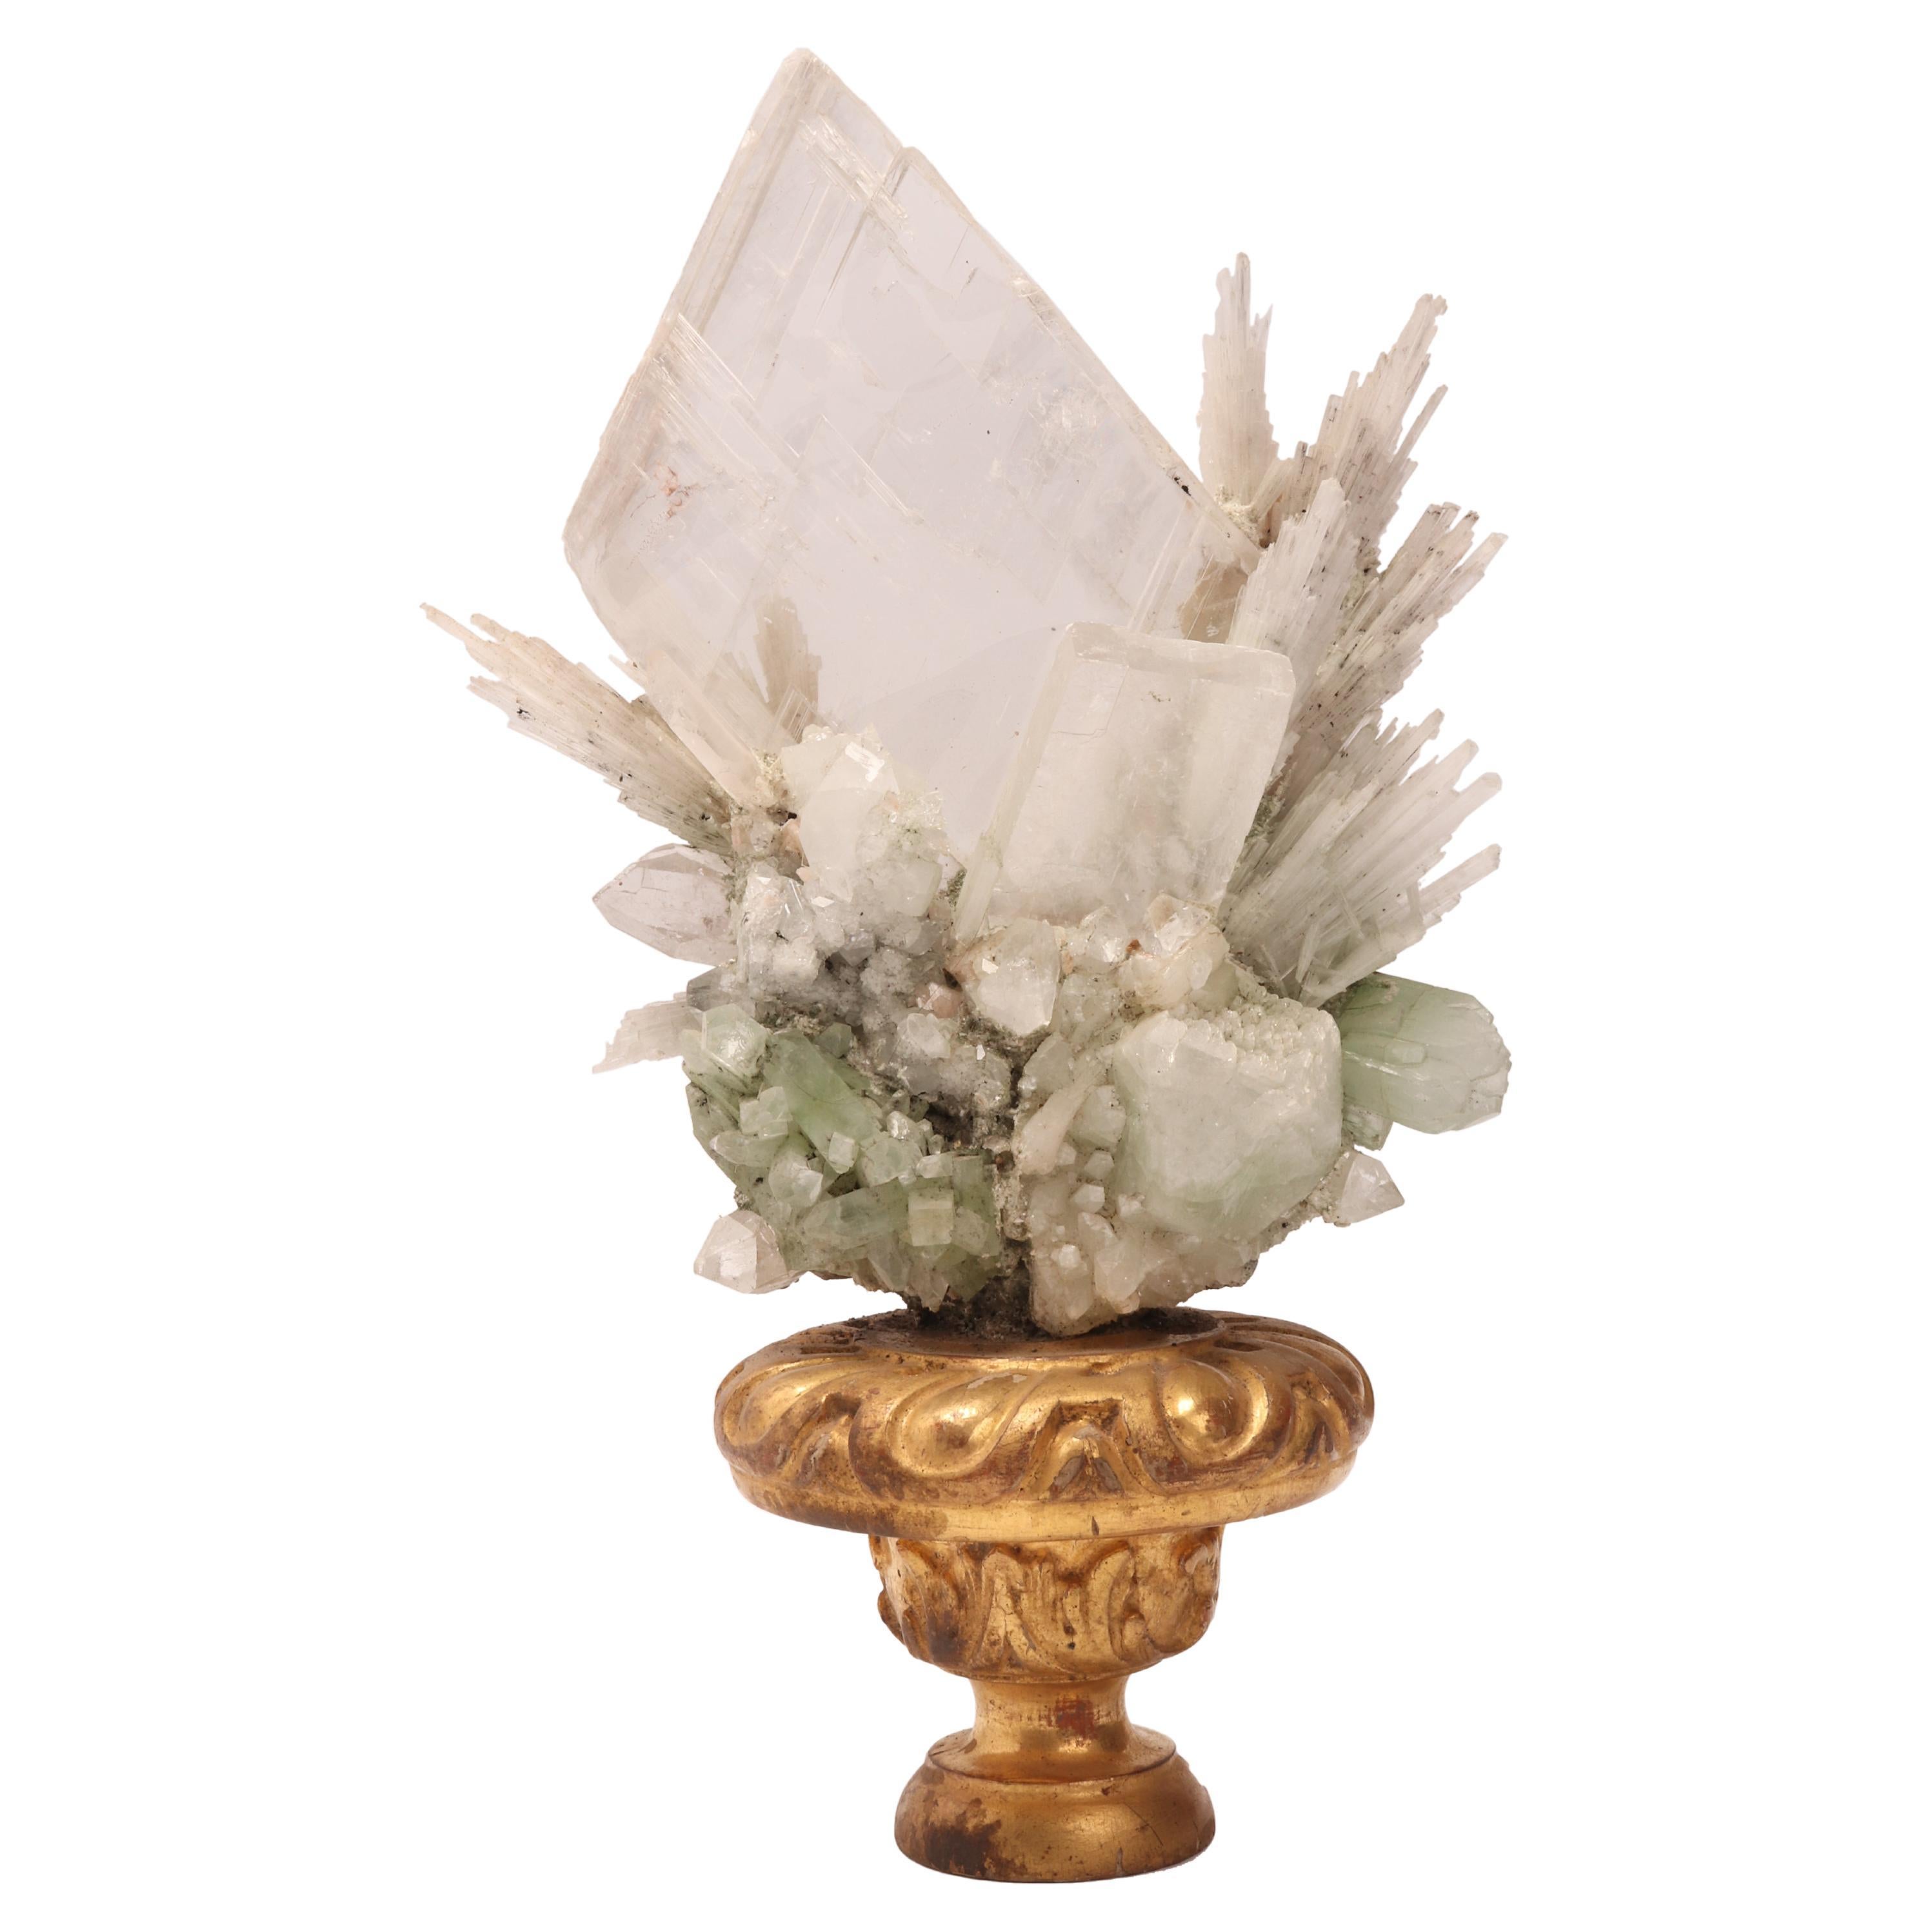 Natural Specimen Apophilite, Quartz and Calcite Flowers Crystals, Italy 1880